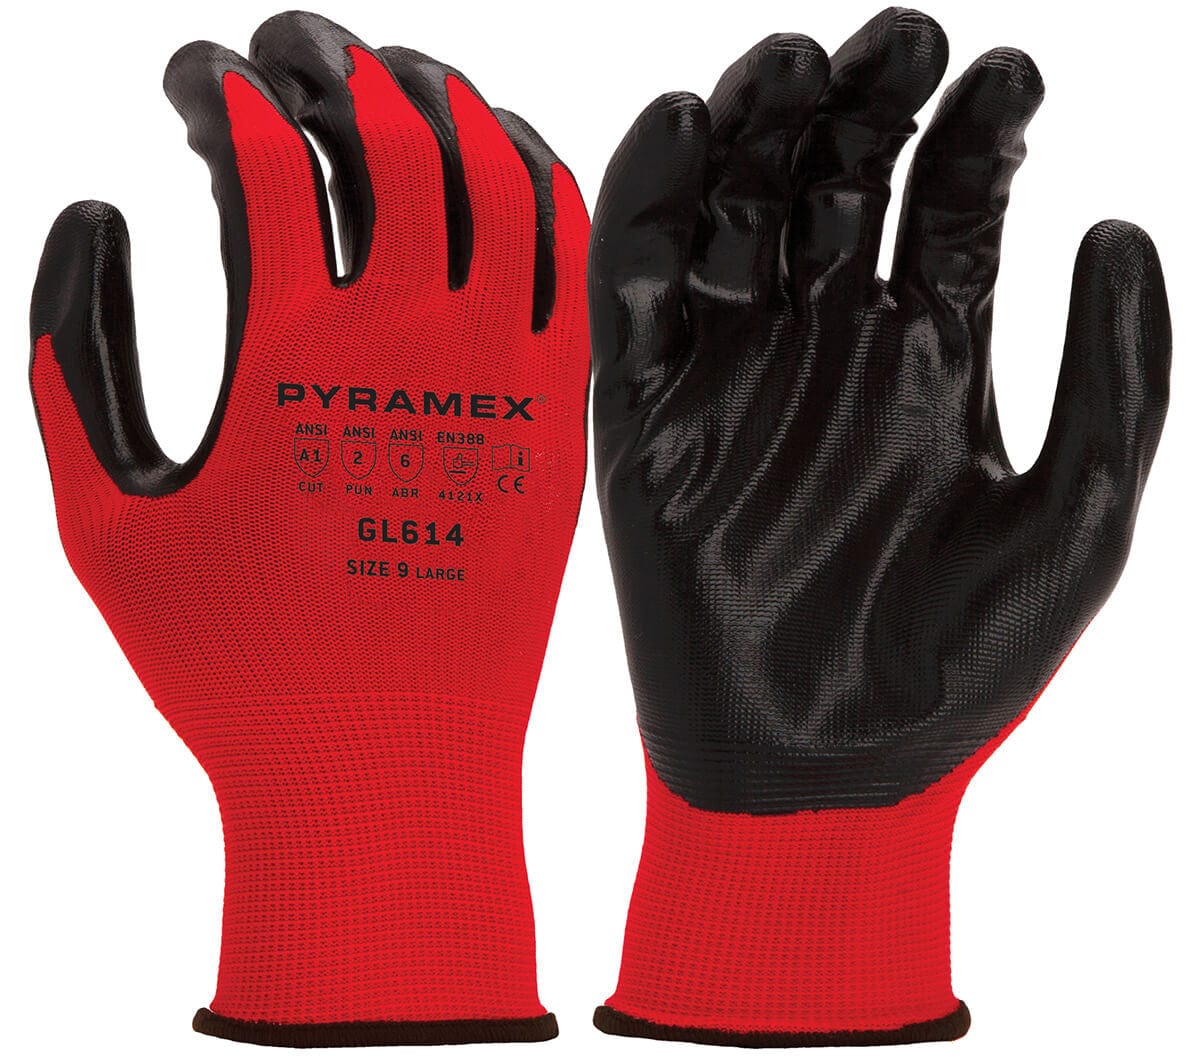 Pyramex GL614 Cut-Resistant A1 Nitrile Foam Dipped Gloves